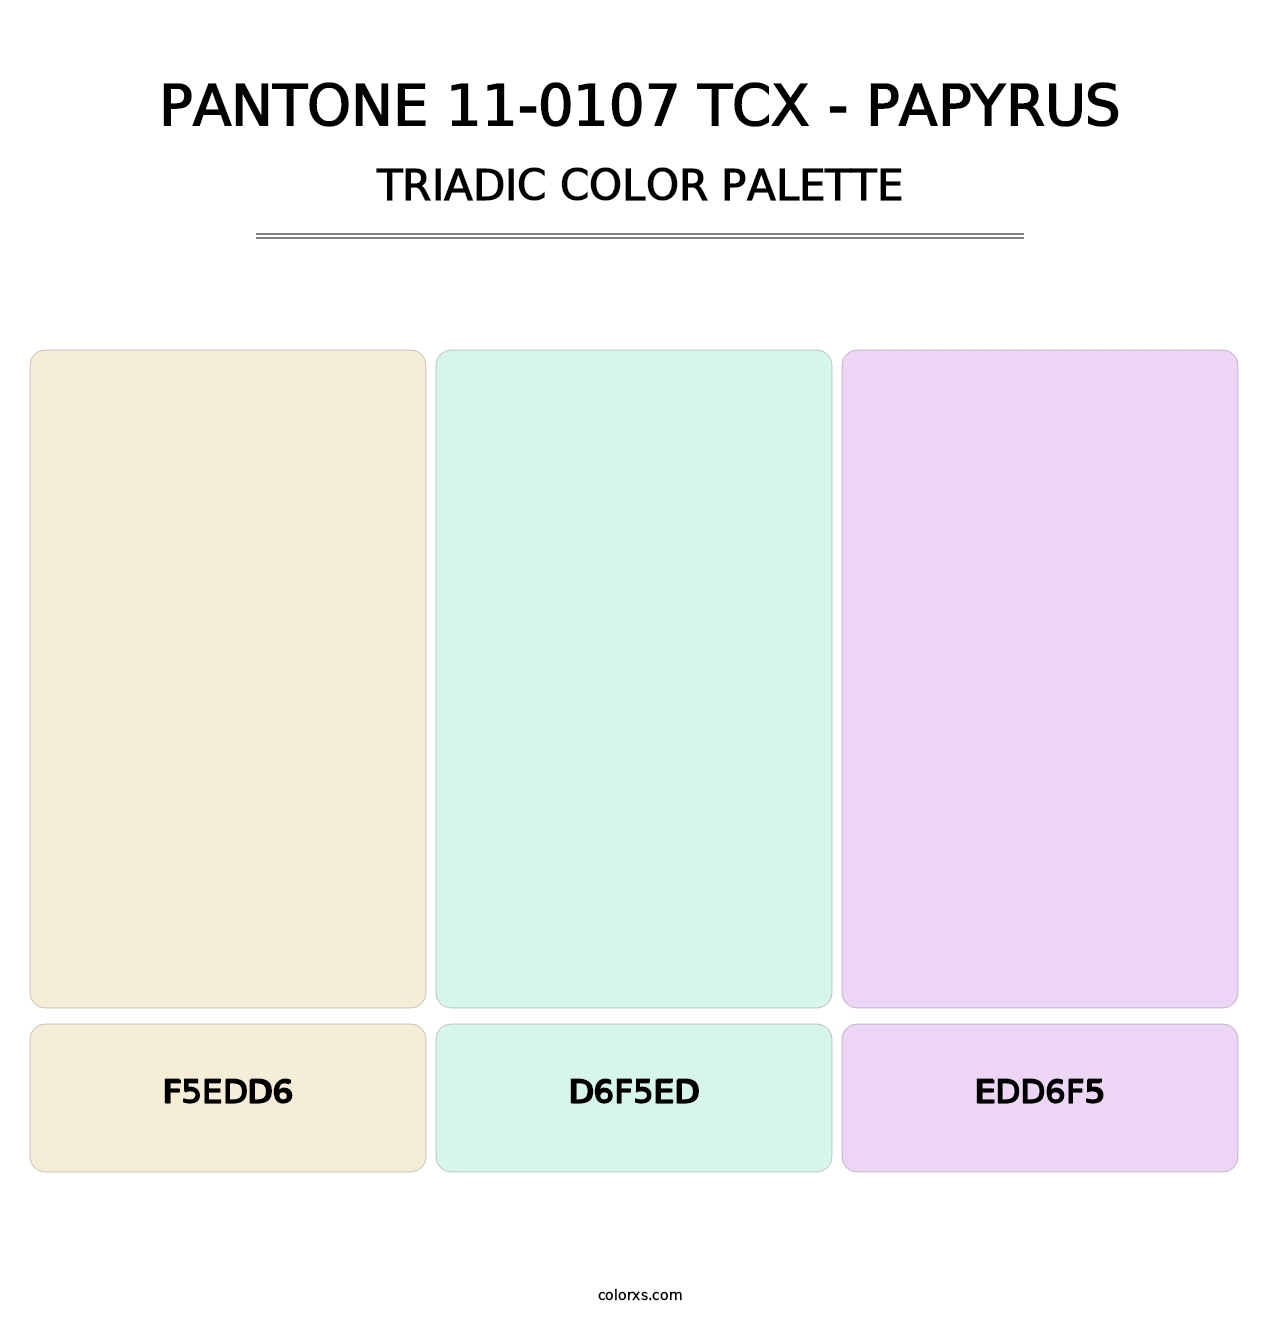 PANTONE 11-0107 TCX - Papyrus - Triadic Color Palette